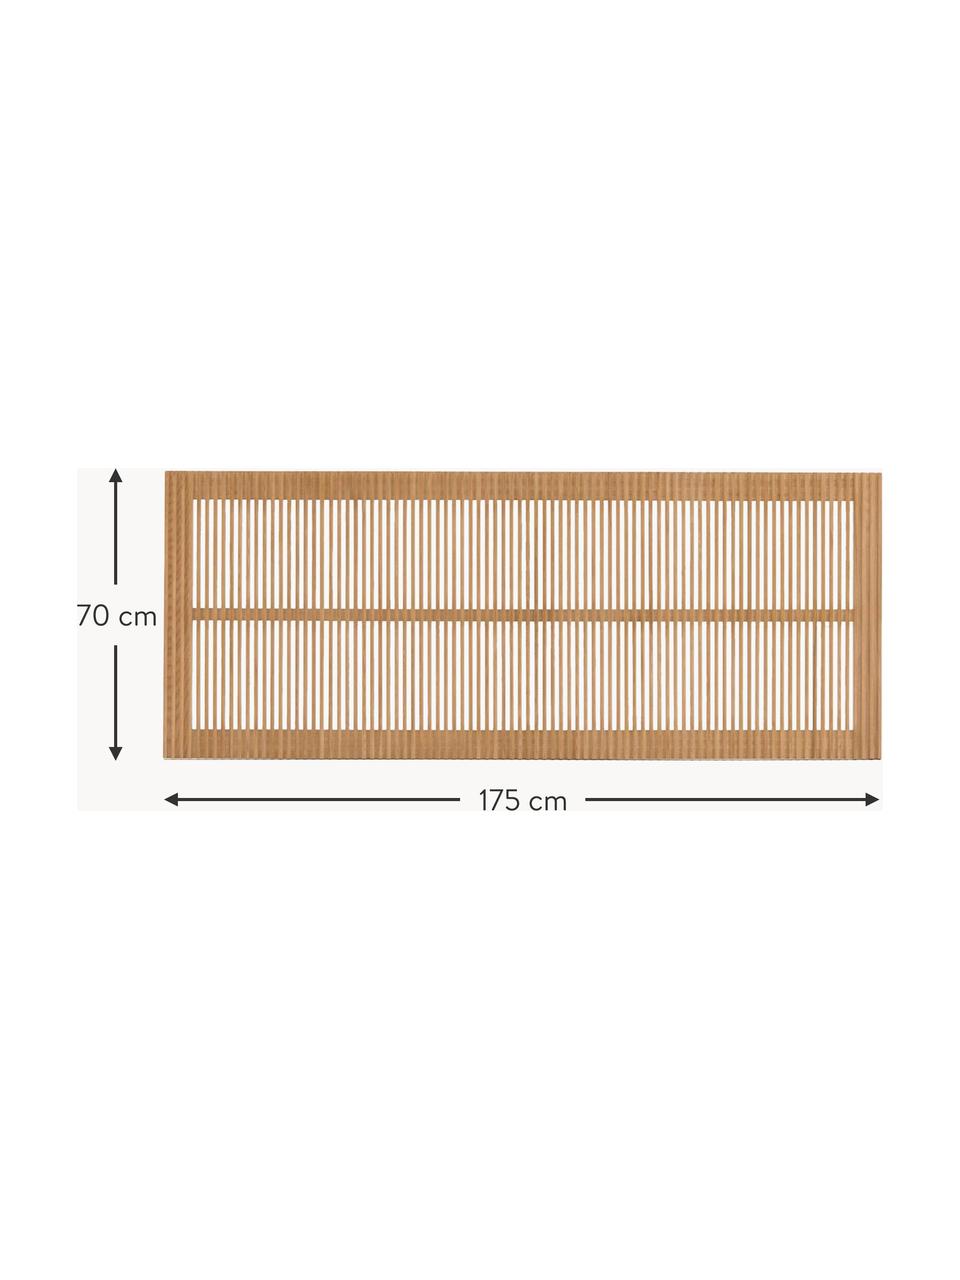 Čelo postele z jasanového dřeva Beyla, Jasanové dřevo

Tento produkt je vyroben z udržitelných zdrojů dřeva s certifikací FSC®., Jasanové dřevo, Š 175 cm, V 70 cm